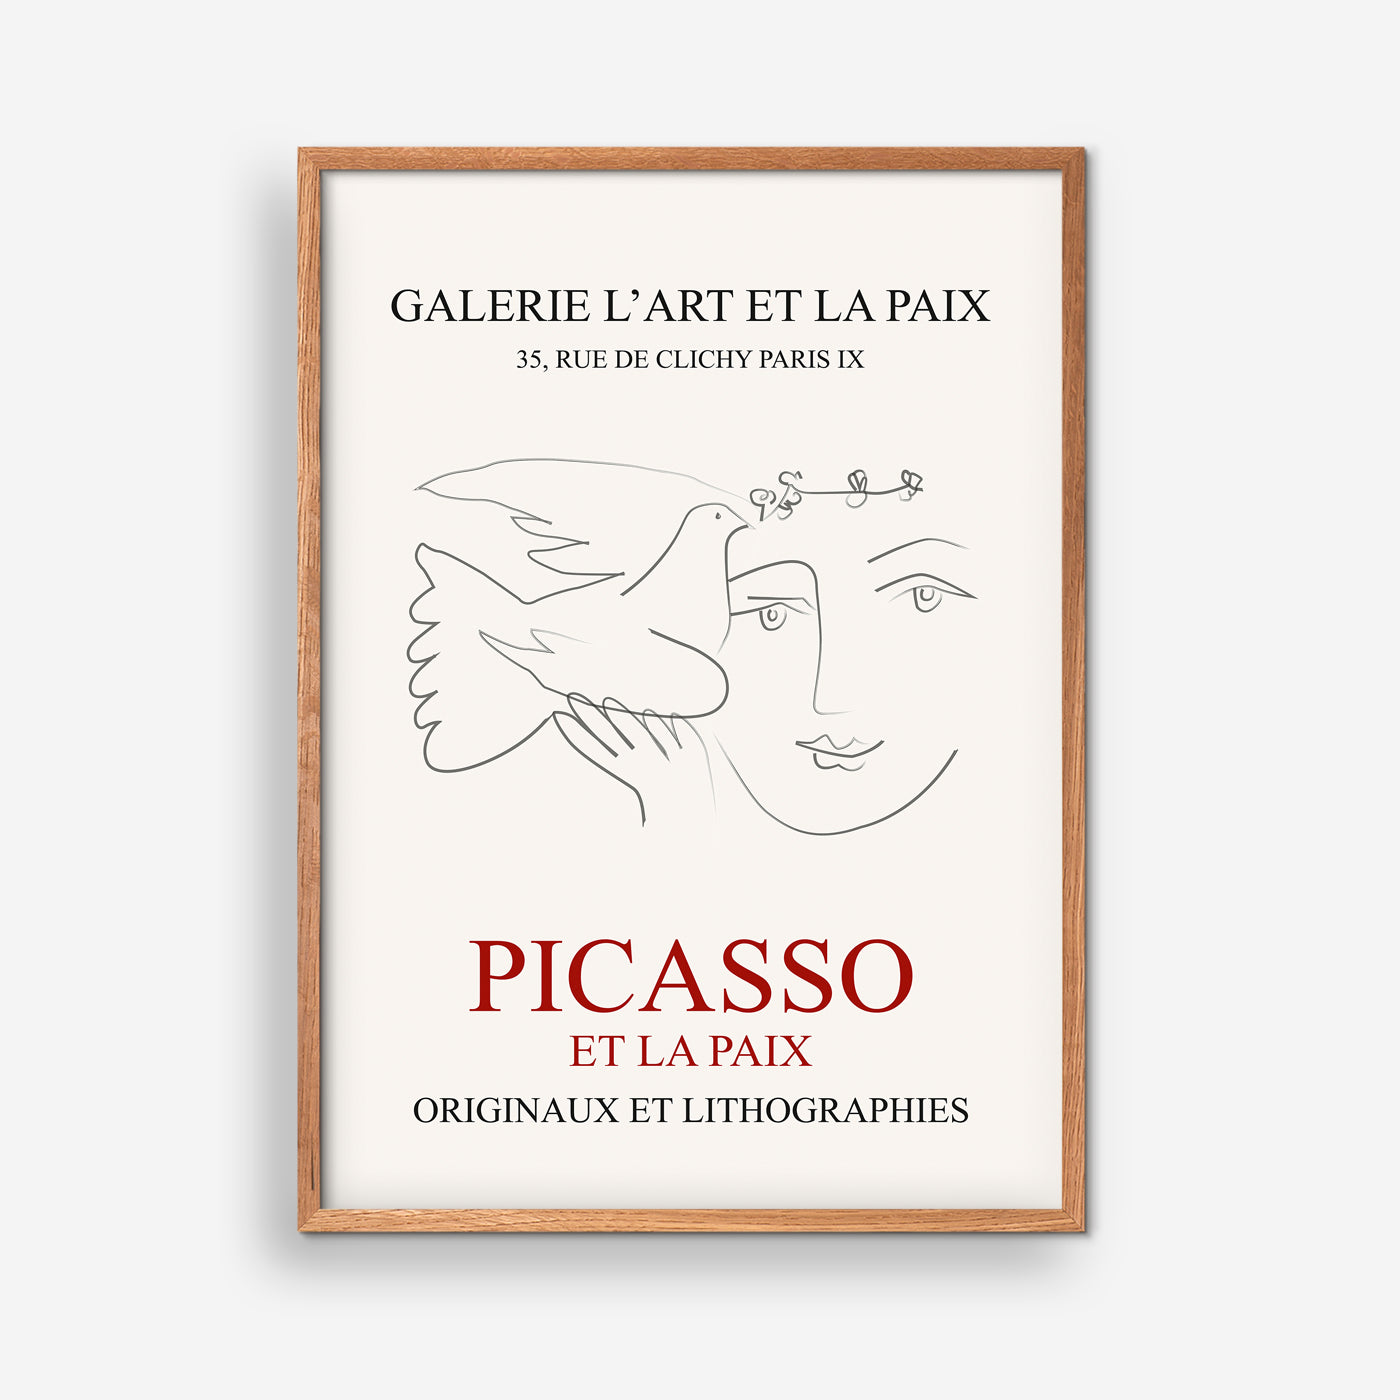 A La Paix exhibition poster - Picasso